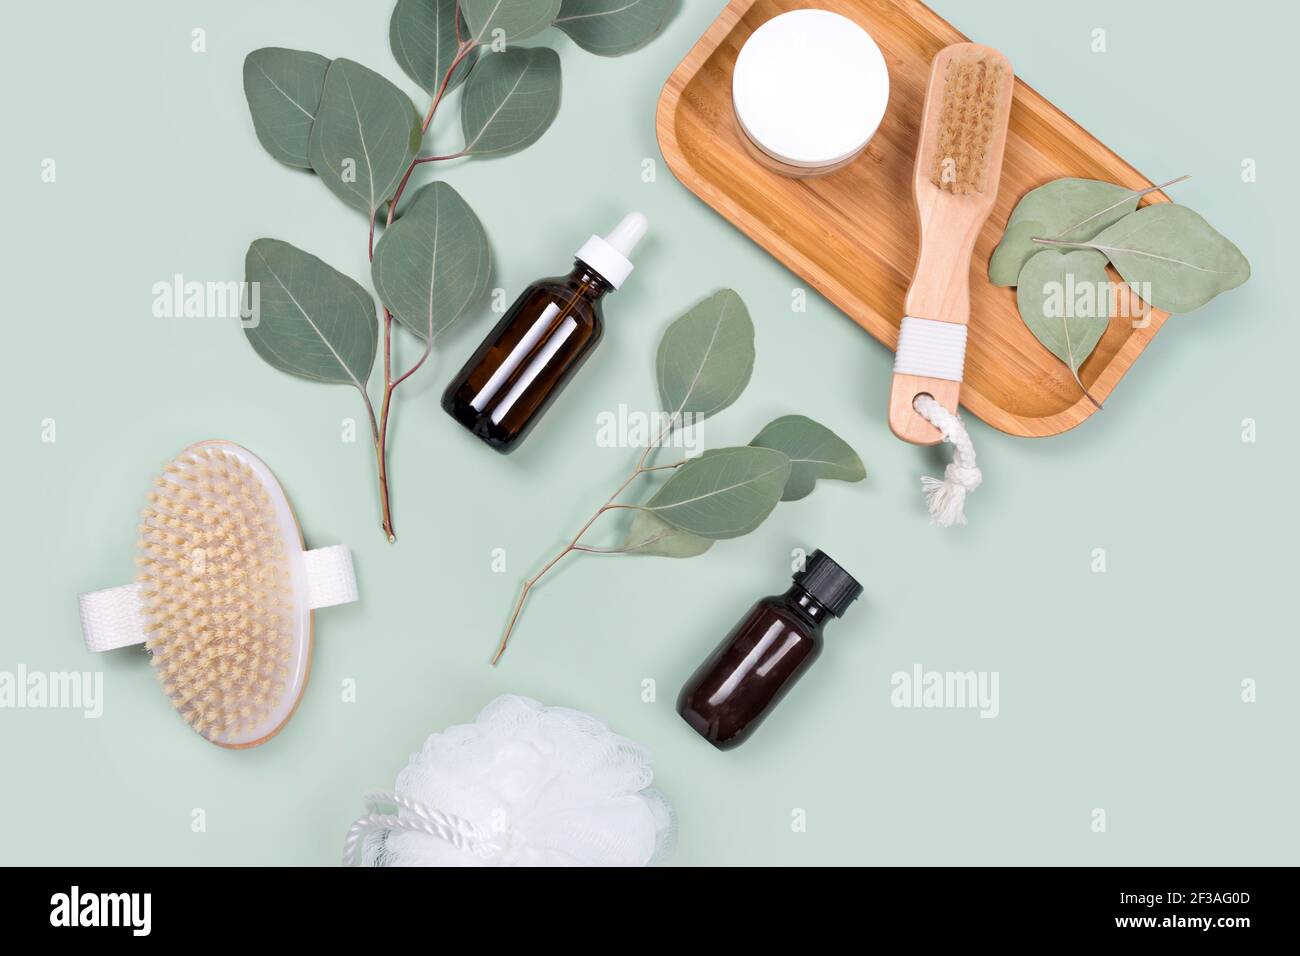 Ätherische Öle, Gesichtscreme-Behälter und Massagebürsten mit natürlichen  Eukalyptusblättern auf grünem Hintergrund. Beauty-Produkte, Massage-Tools,  Gesichtsbehandlung Stockfotografie - Alamy